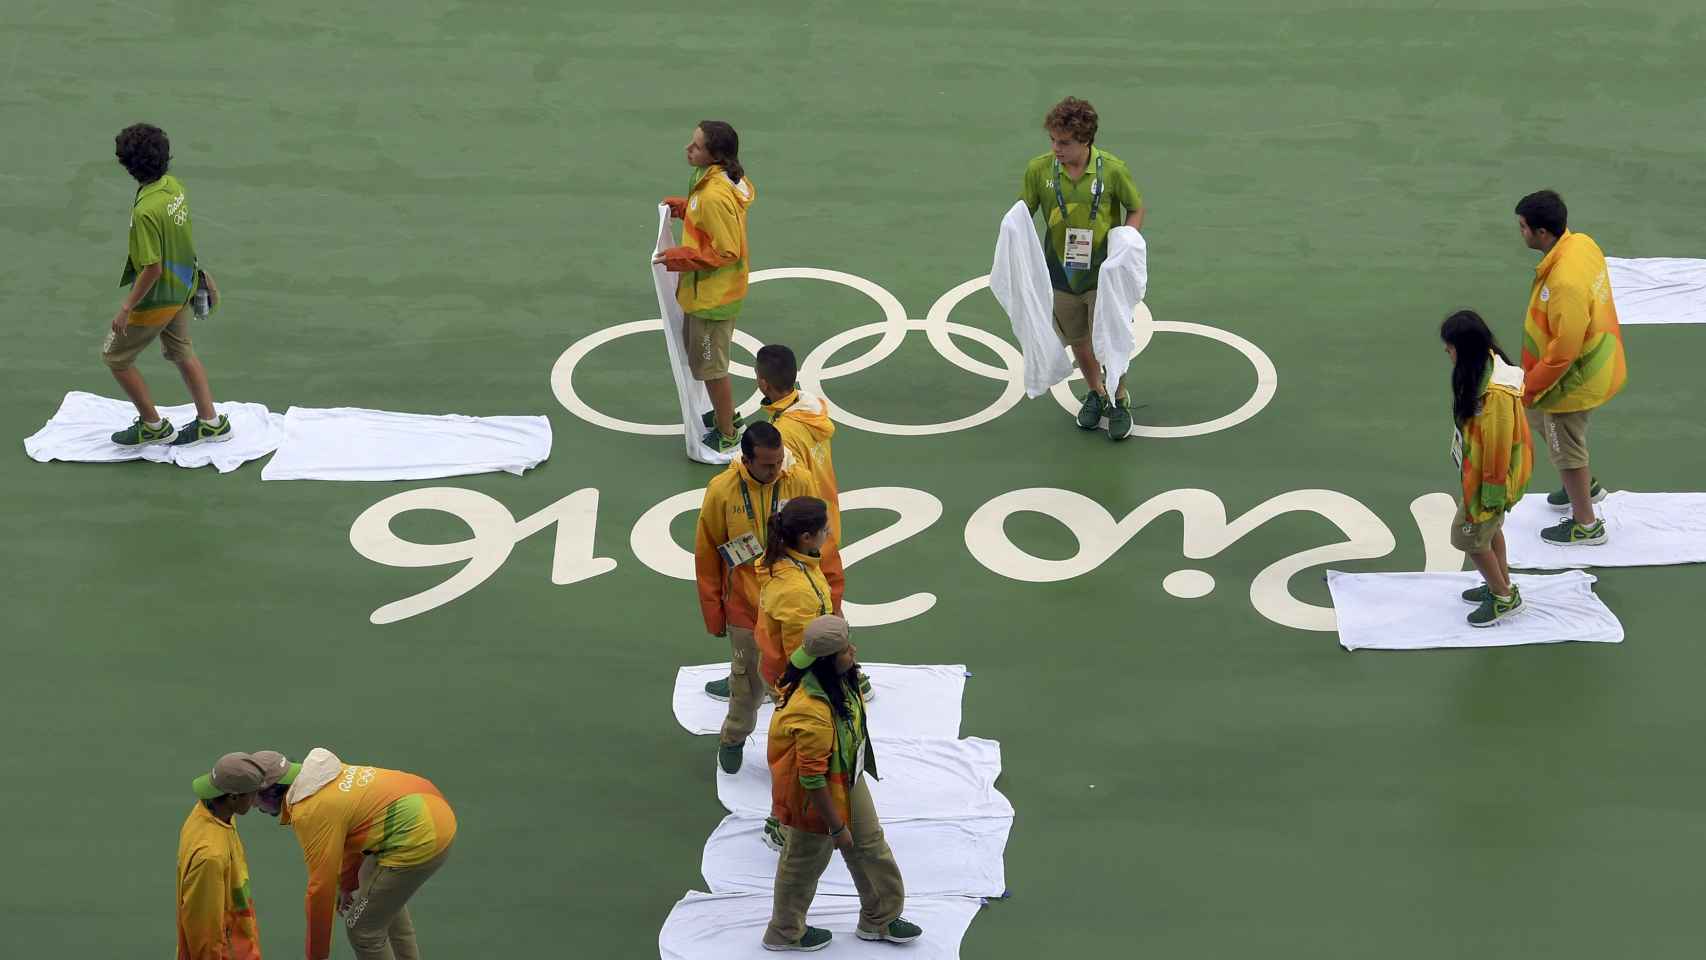 Los voluntarios brasileños limpian la pista de tenis.